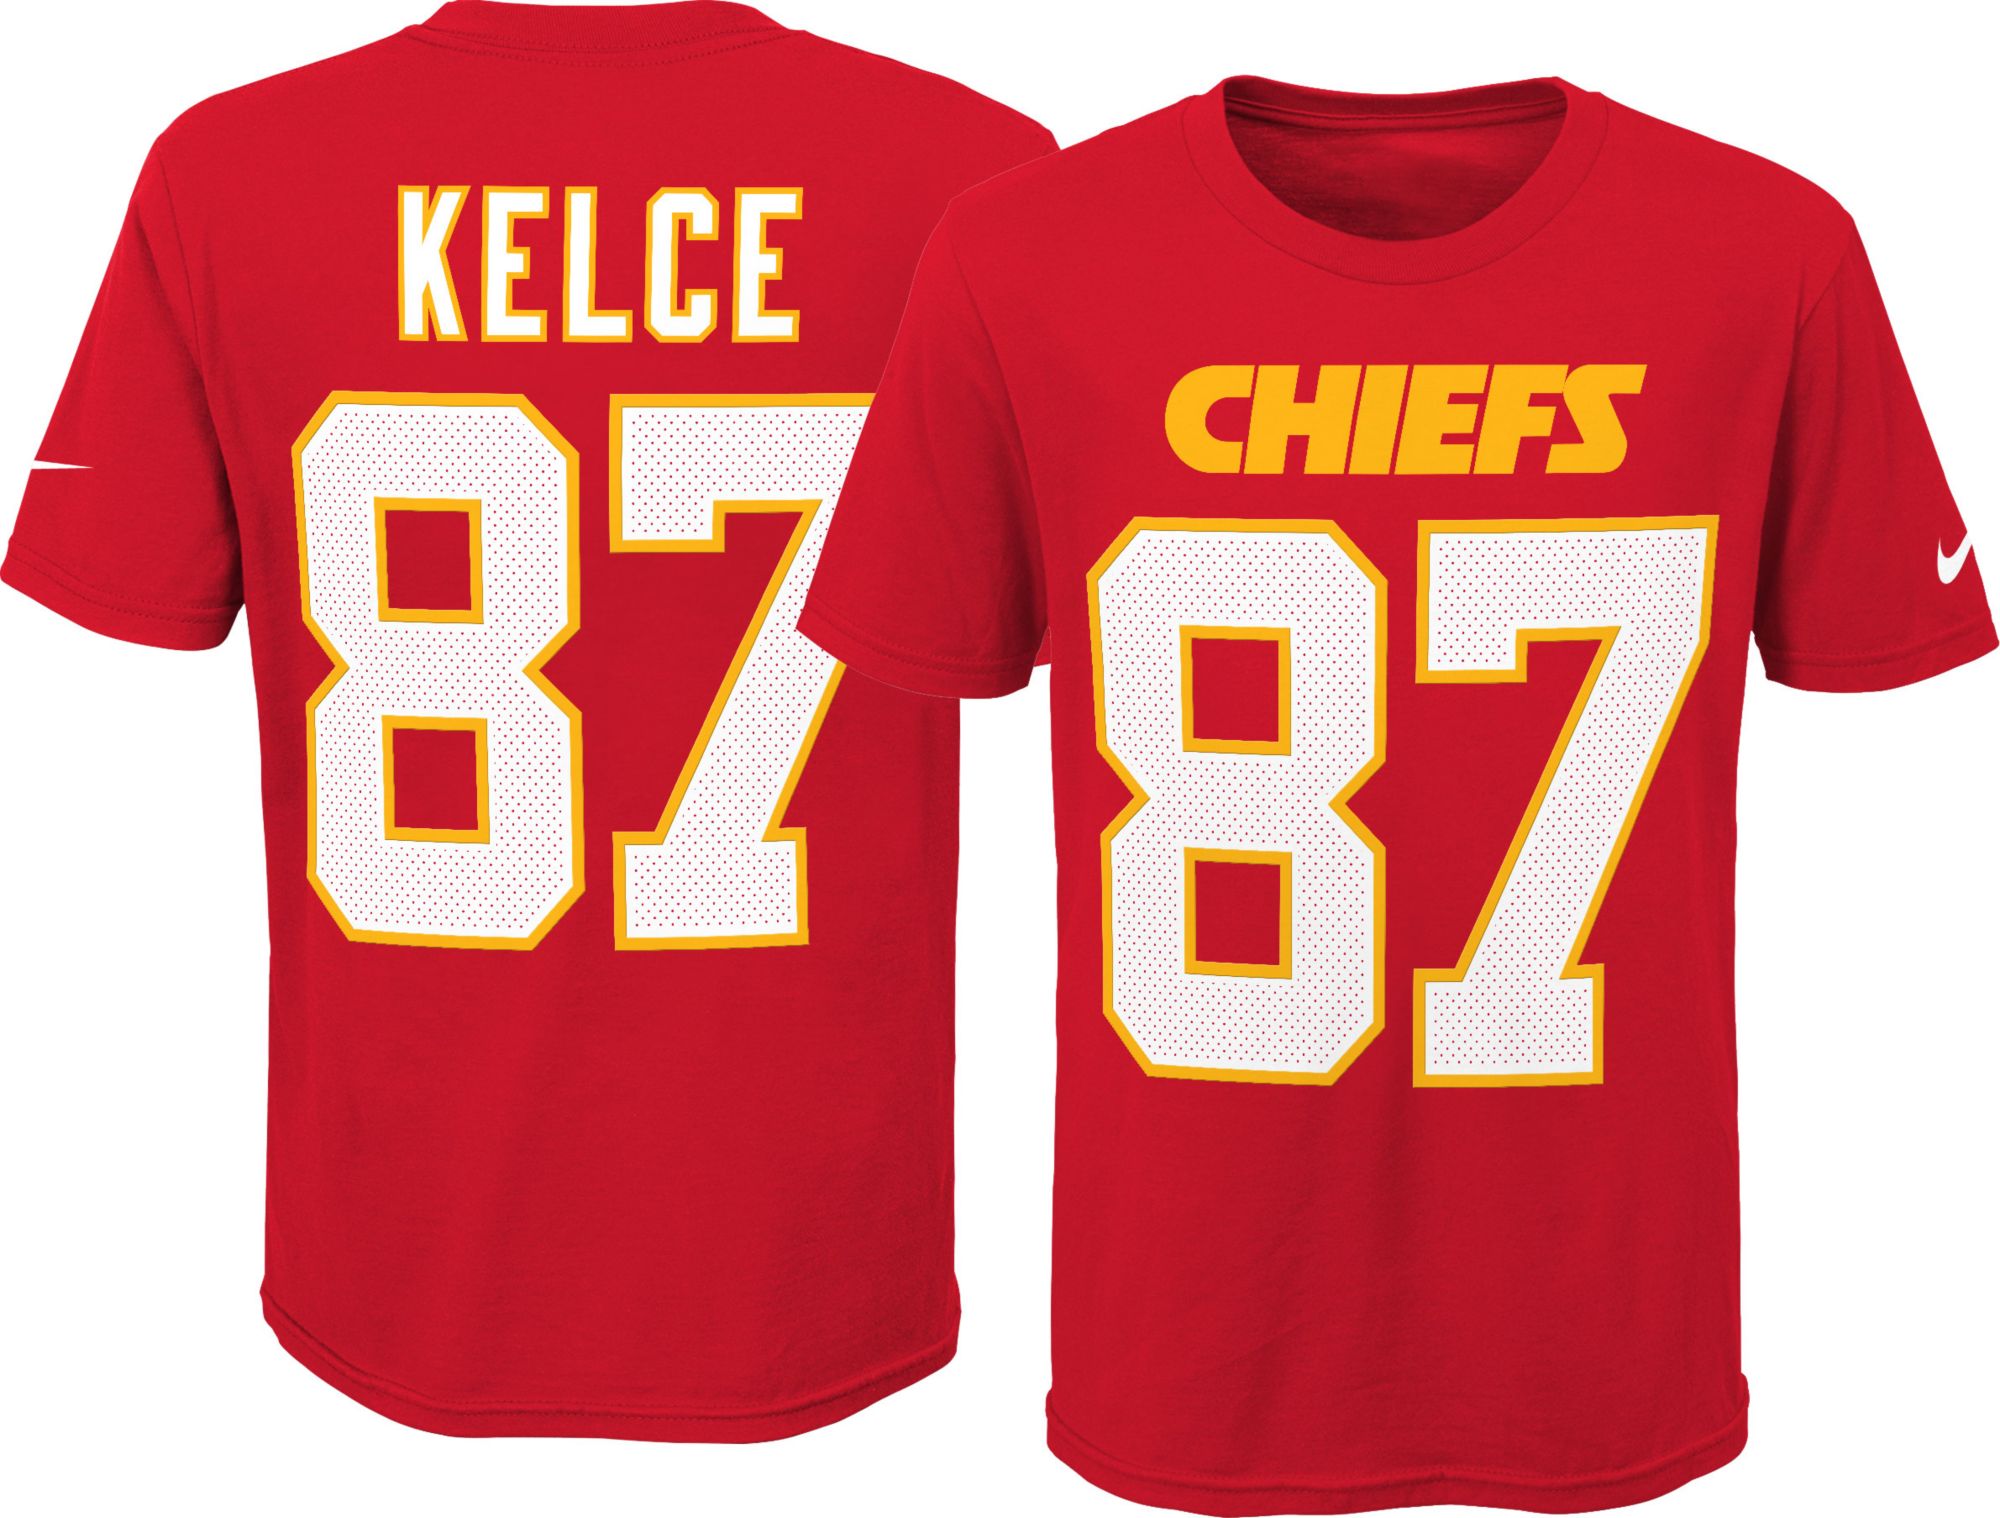 kelce chiefs jersey